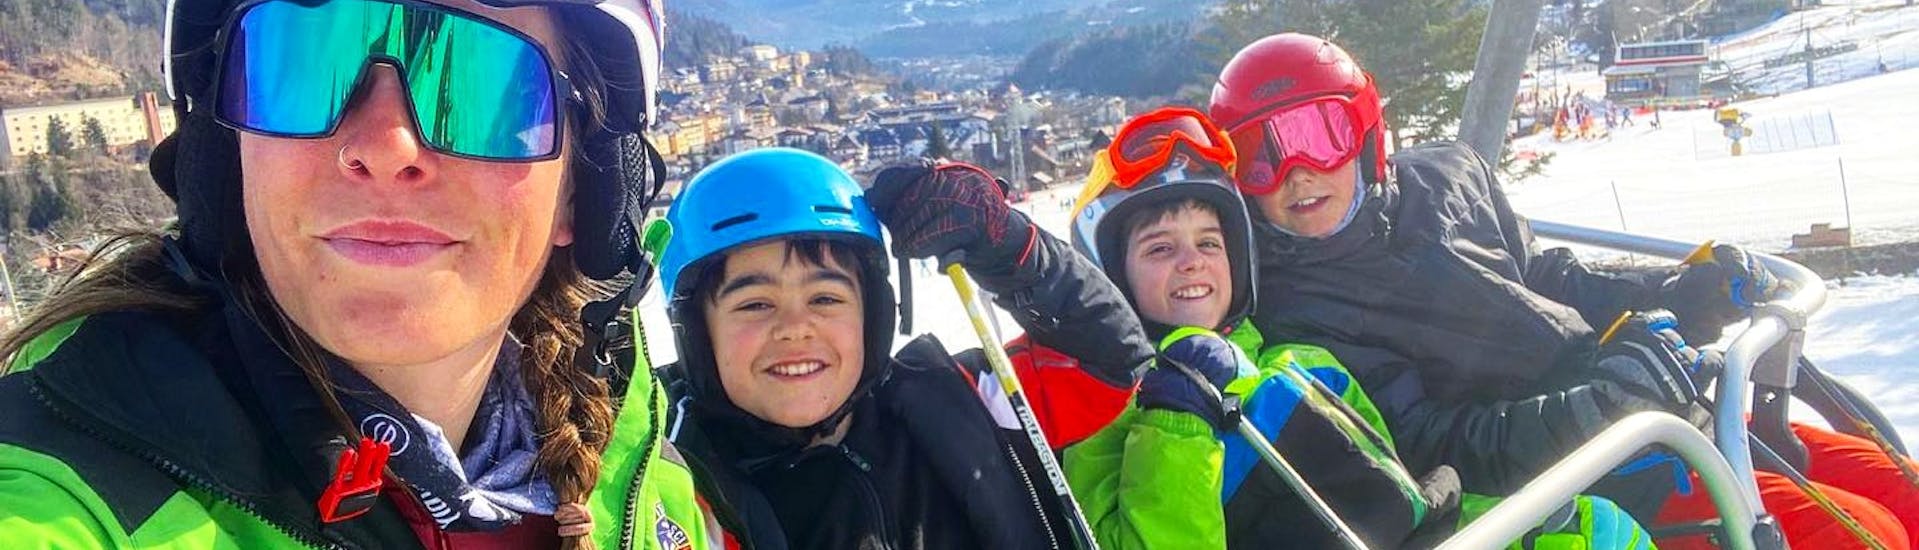 Lezioni di sci per bambini (4-15 anni) per tutti i livelli - 4 Weekends.